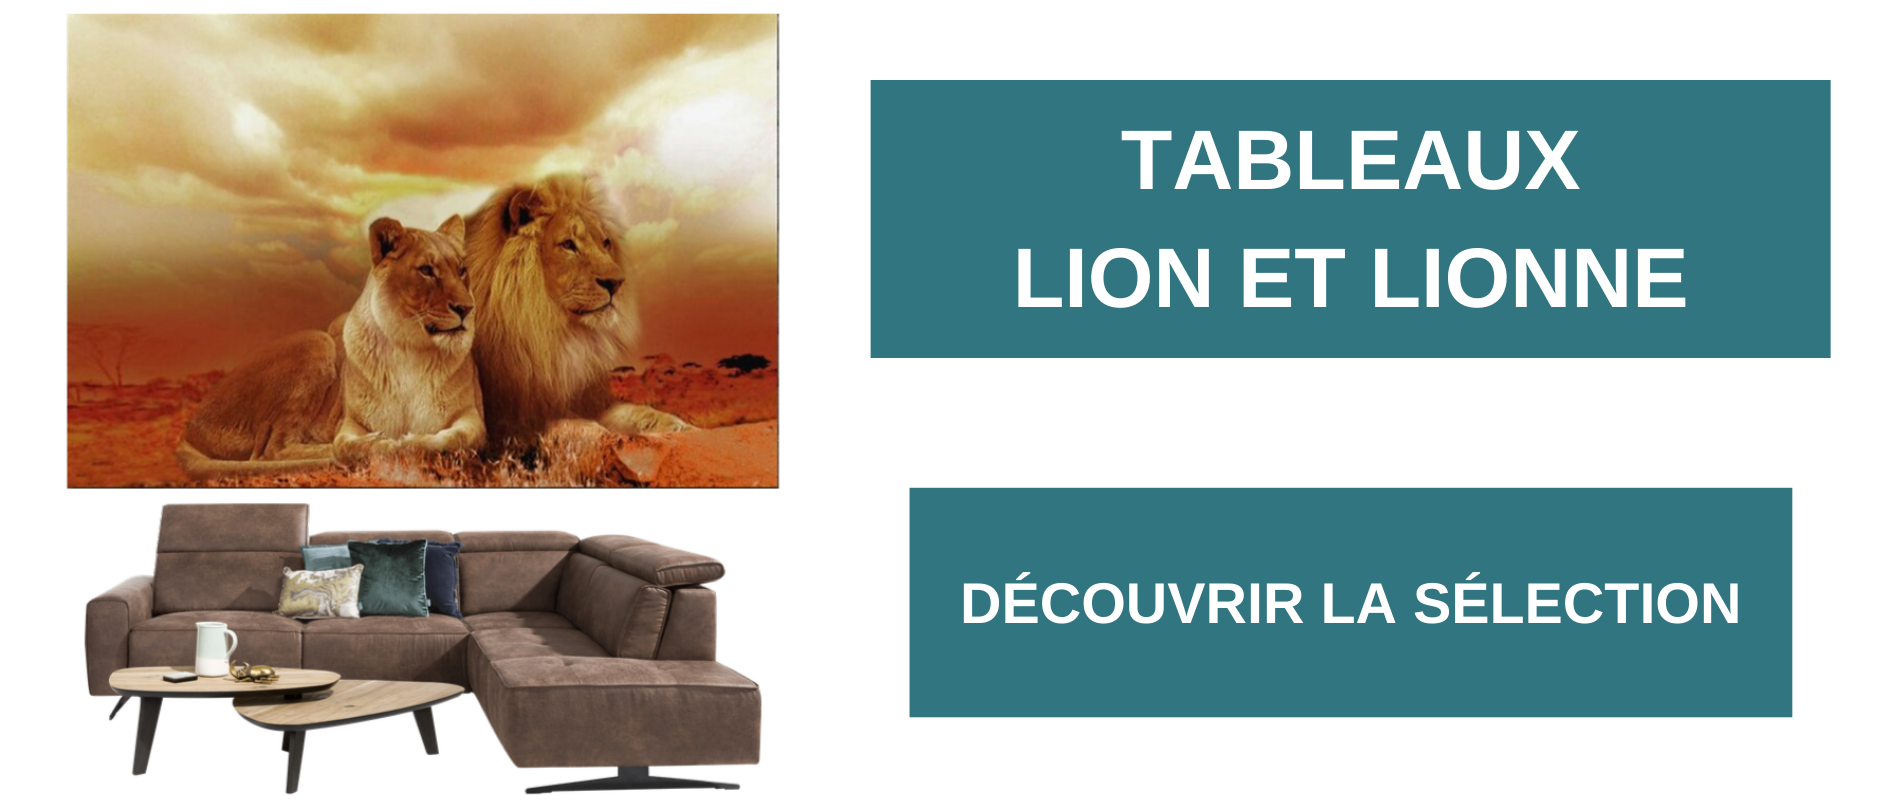 Tableaux lion et lionne.